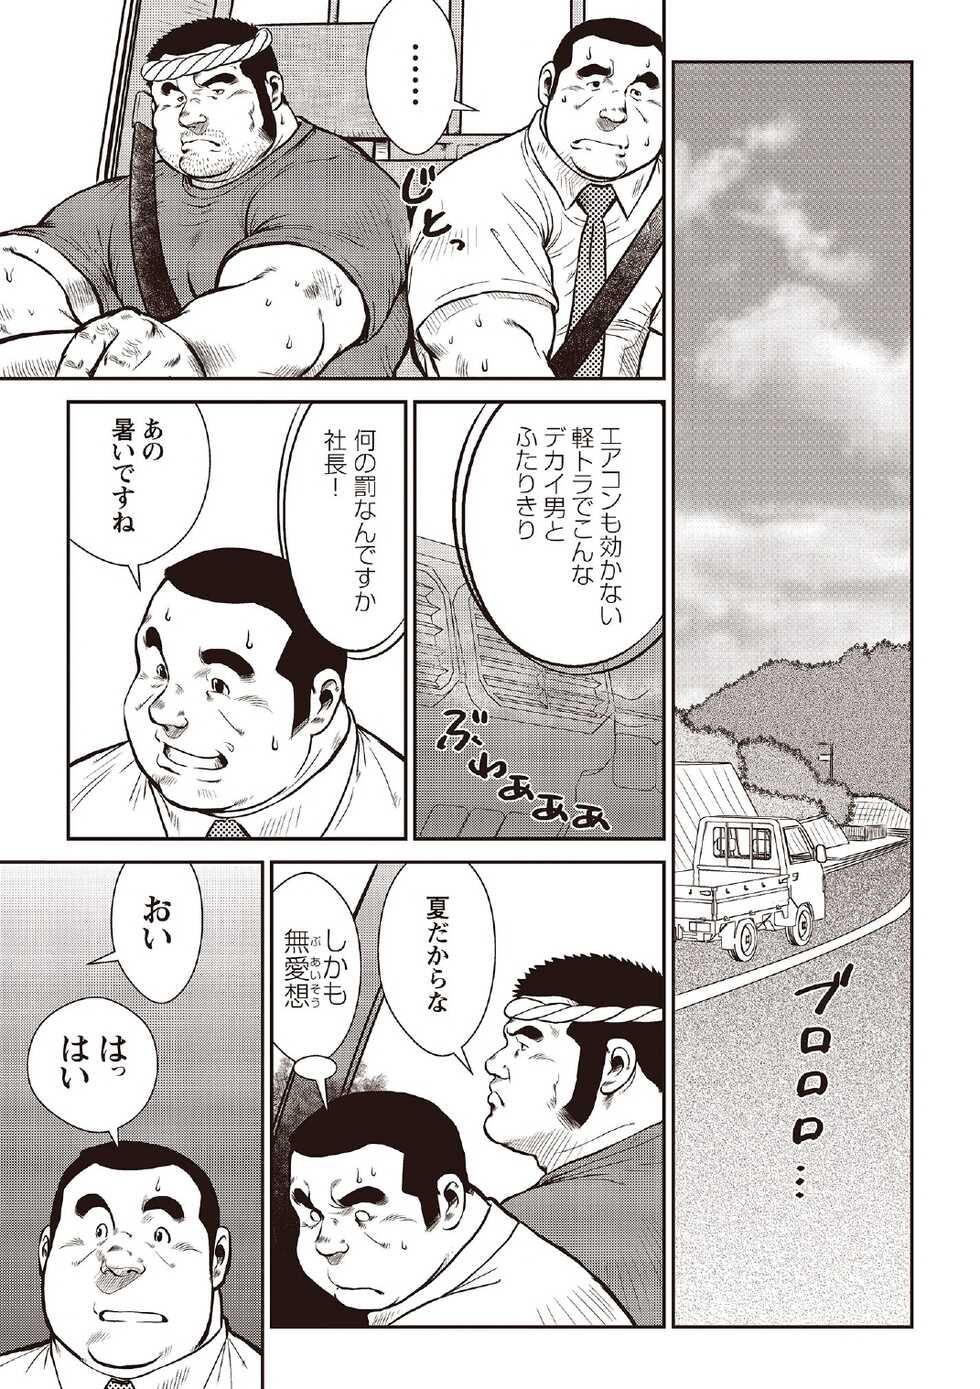 [Ebisubashi Seizou] Ebisubashi Seizou Tanpen Manga Shuu 2 Fuuun! Danshi Ryou [Bunsatsuban] PART 2 Bousou Hantou Taifuu Zensen Ch. 1 + Ch. 2 [Digital] - Page 3